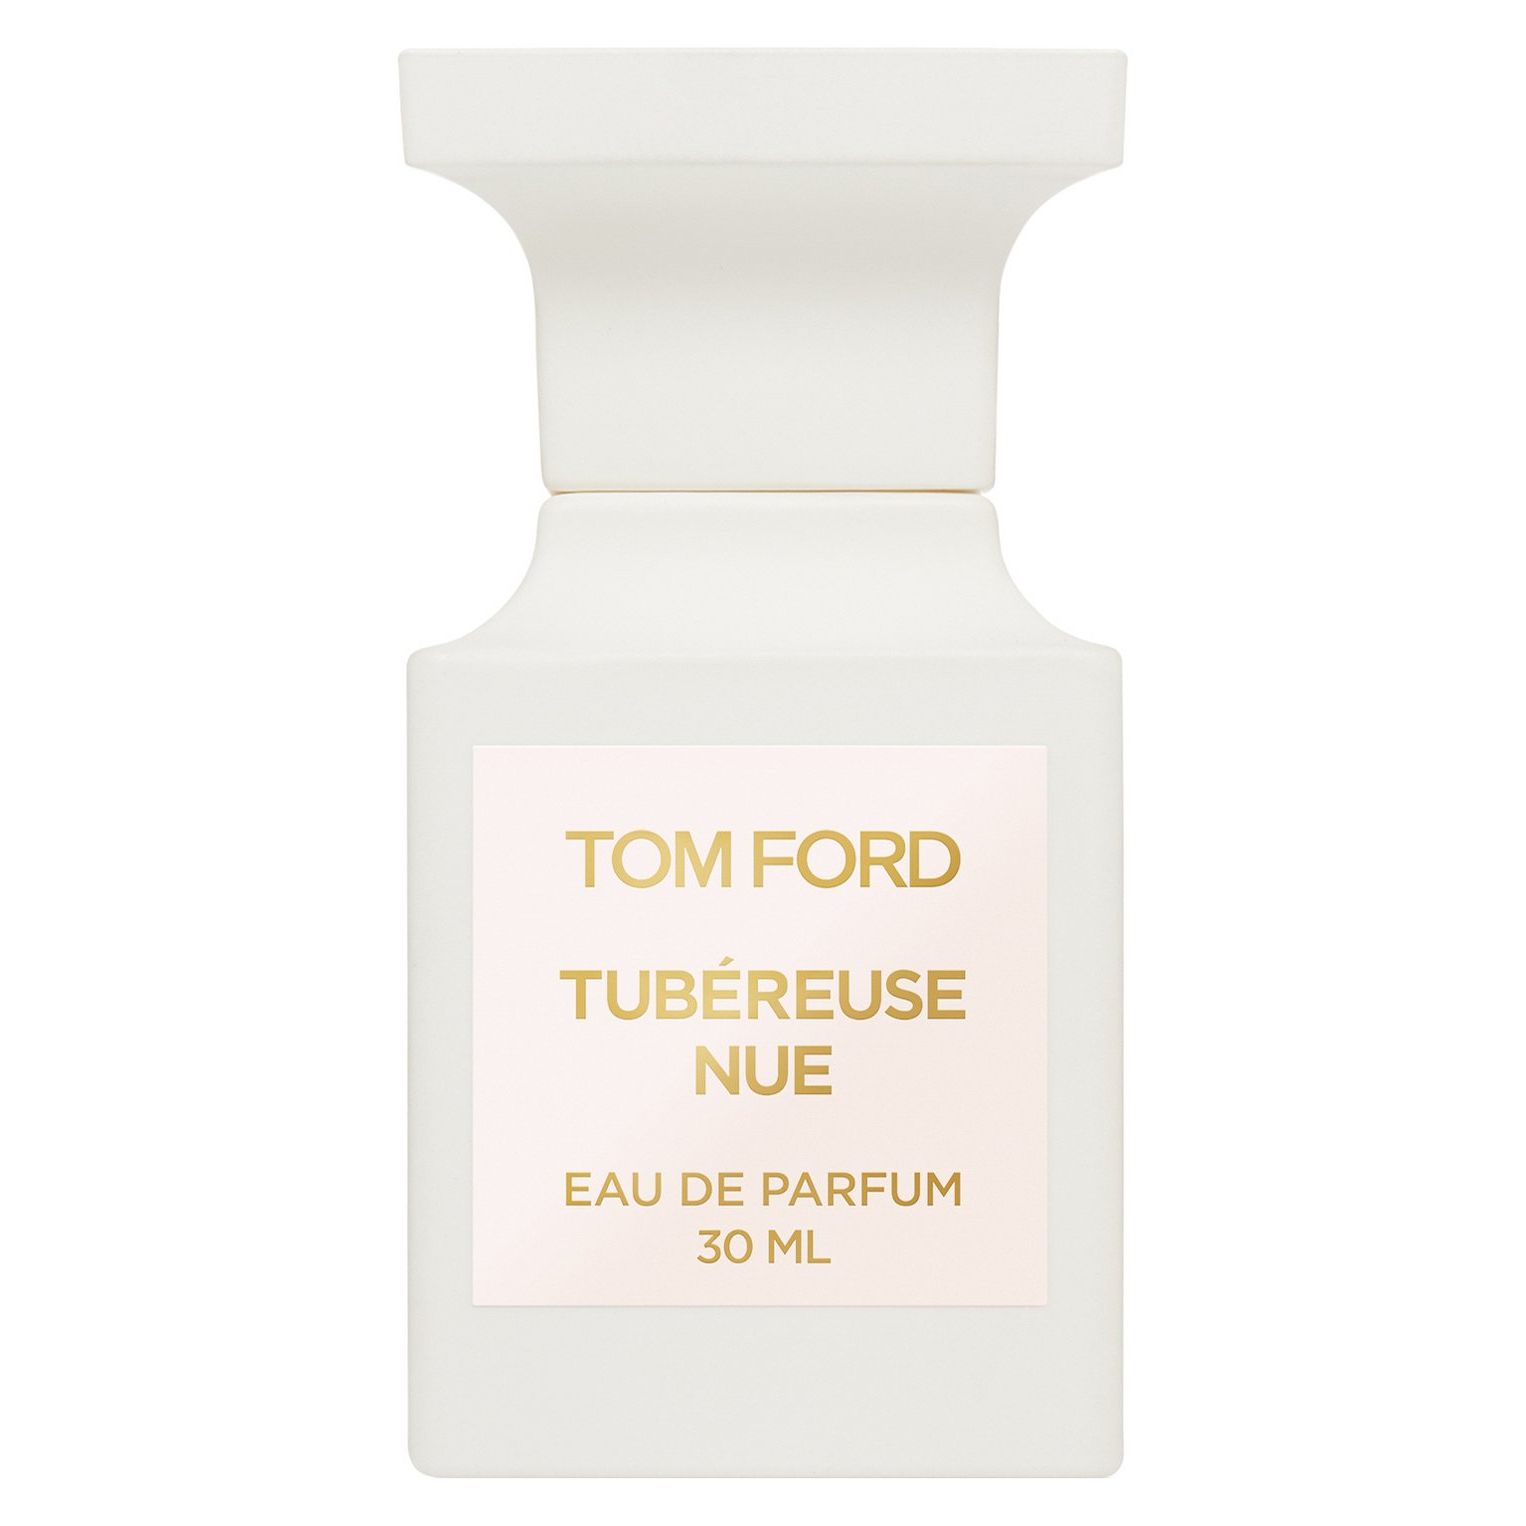 Вода парфюмерная Tom Ford Tubereuse Nue, унисекс, 30 мл tom ford tubereuse nue 50